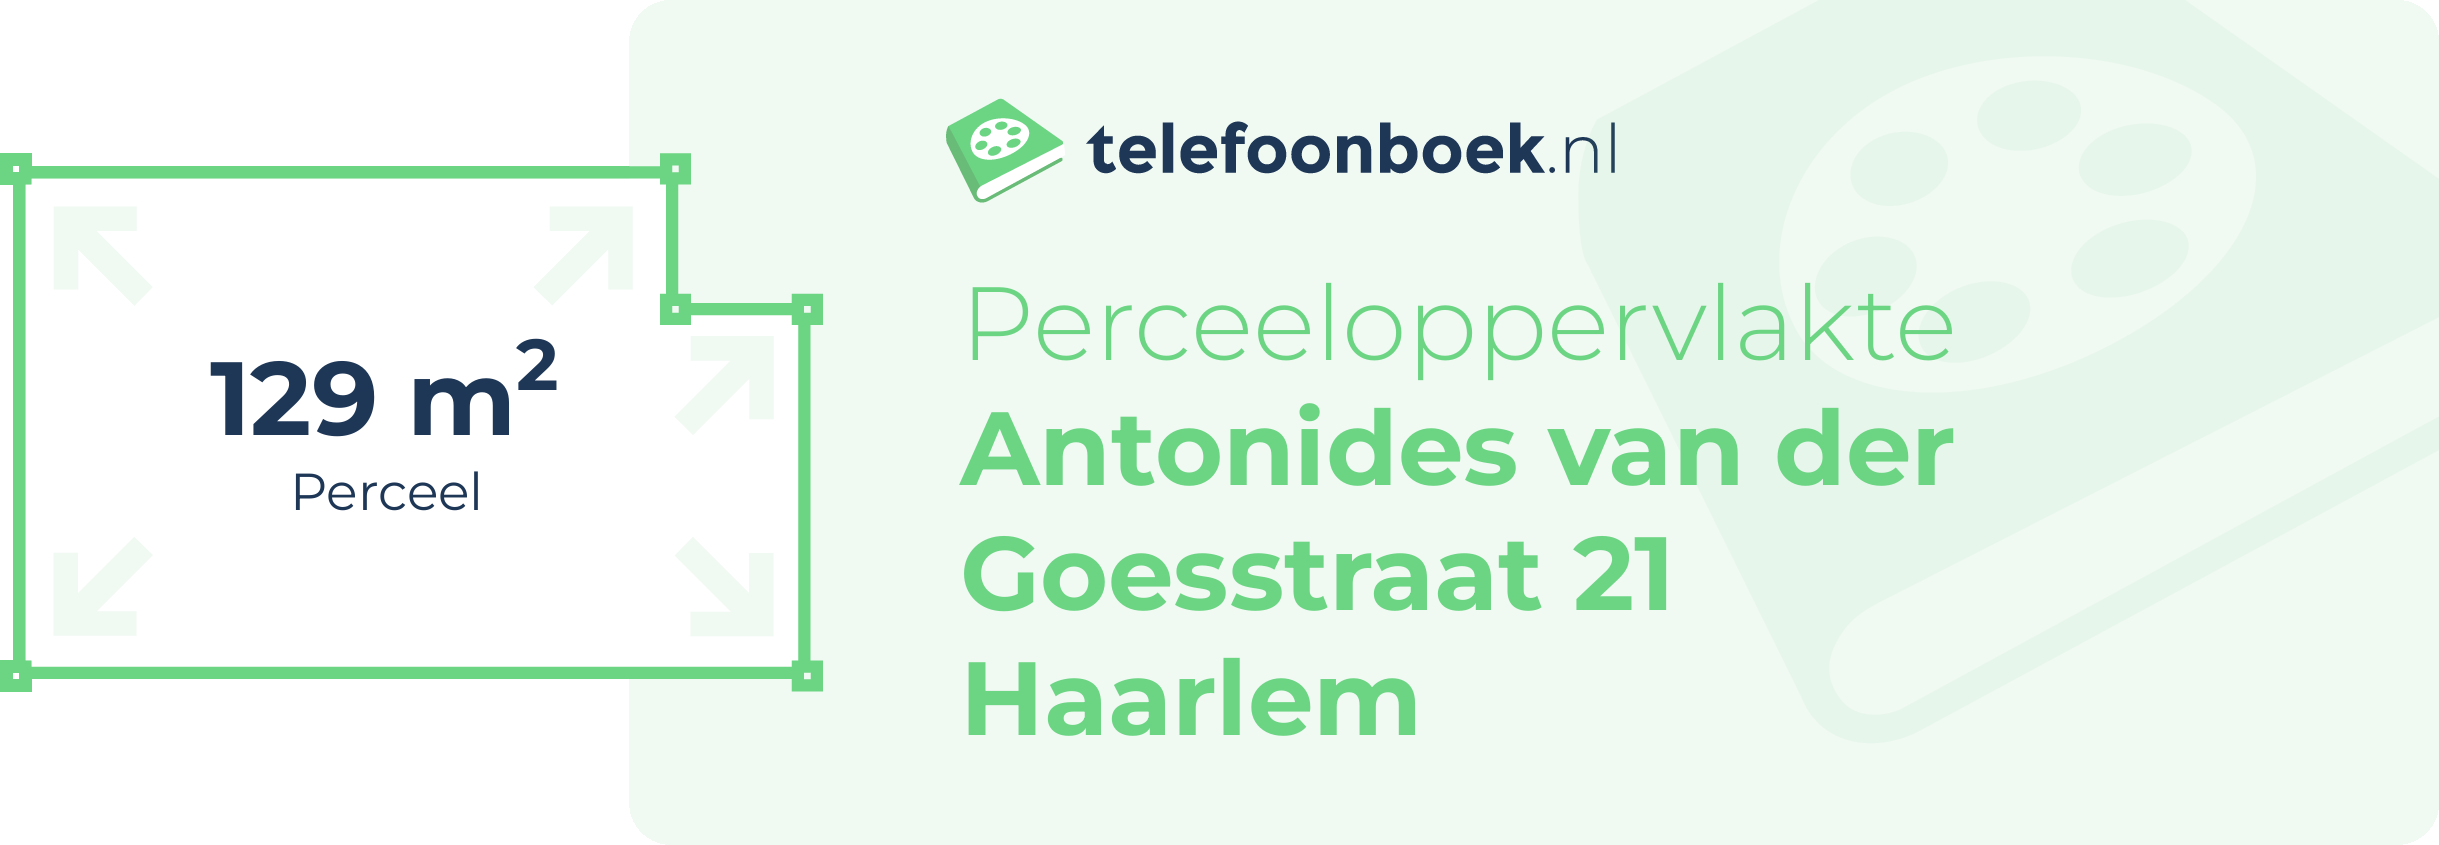 Perceeloppervlakte Antonides Van Der Goesstraat 21 Haarlem